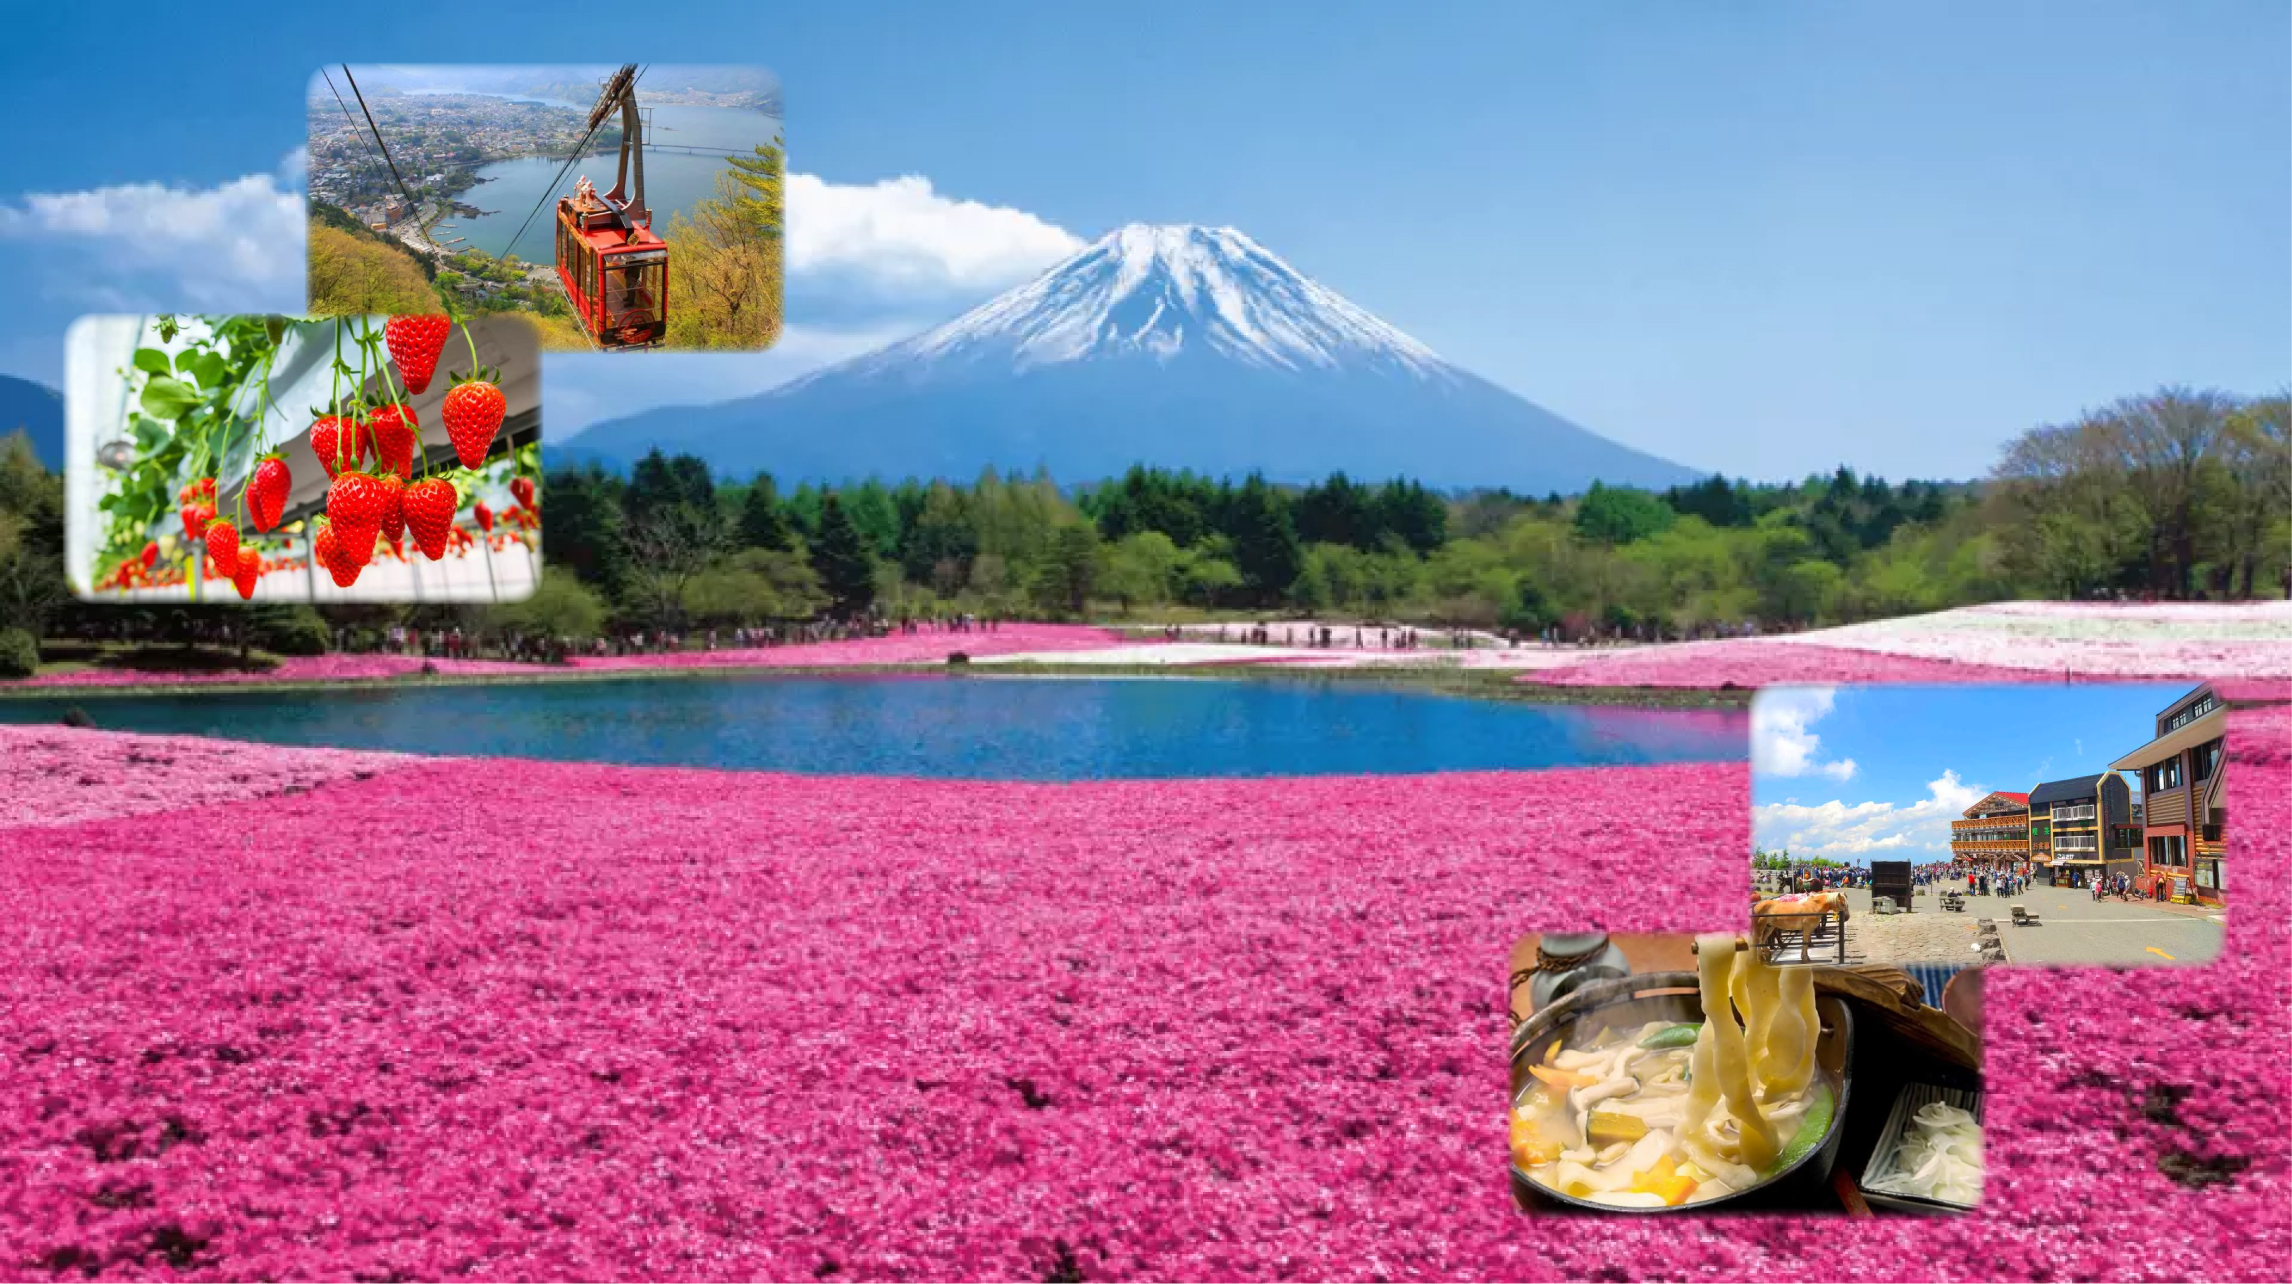 Tokyo] Mt. Fuji Flower Festival & Ropeway & Fruit Picking Tour